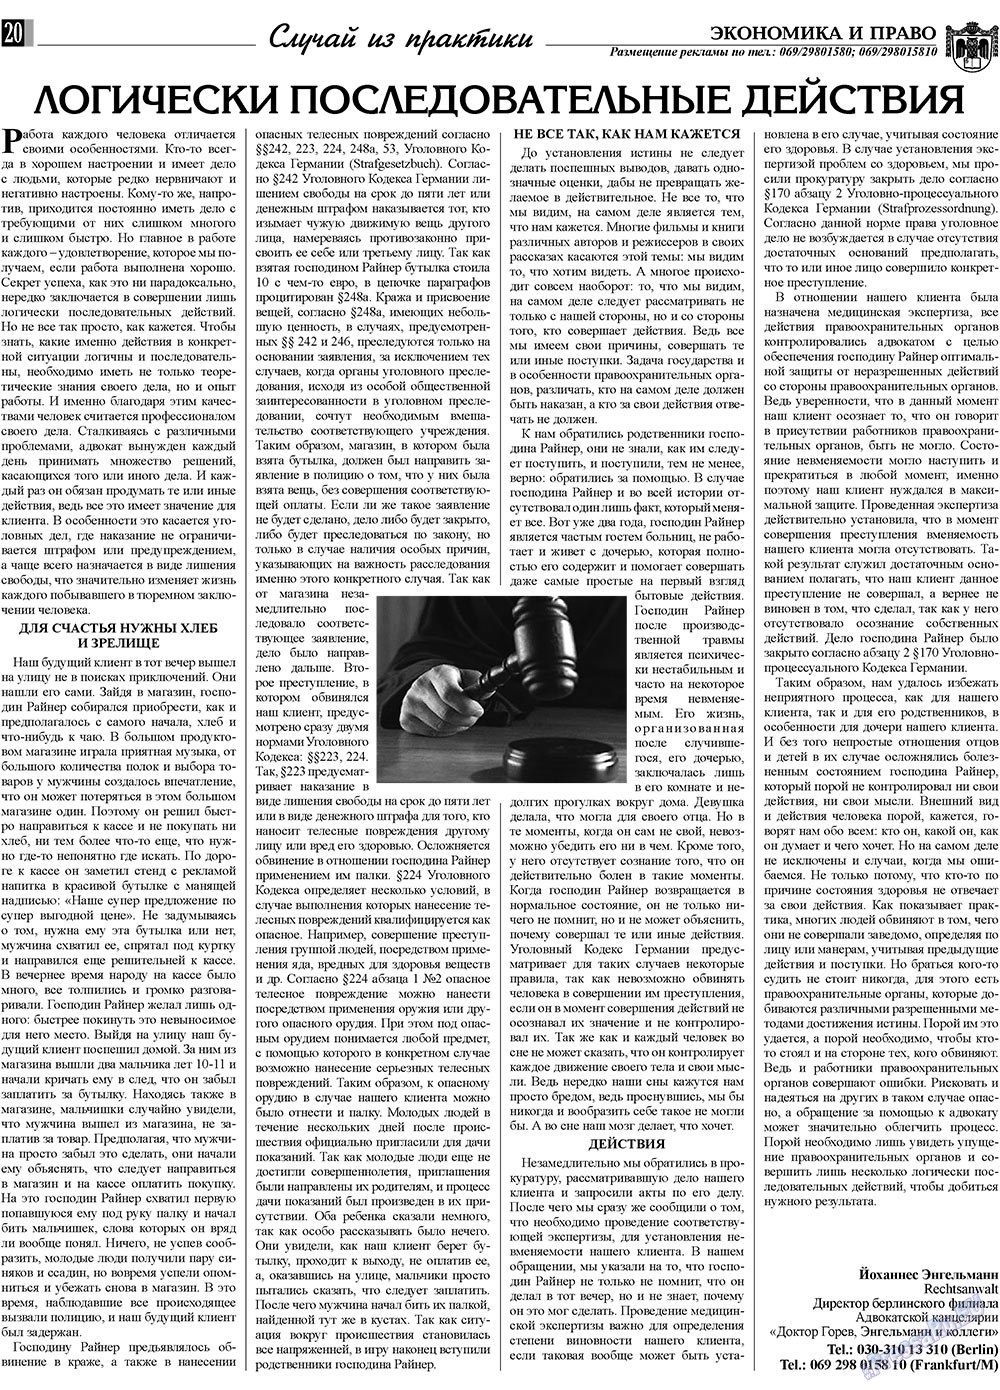 Экономика и право, газета. 2009 №11 стр.20